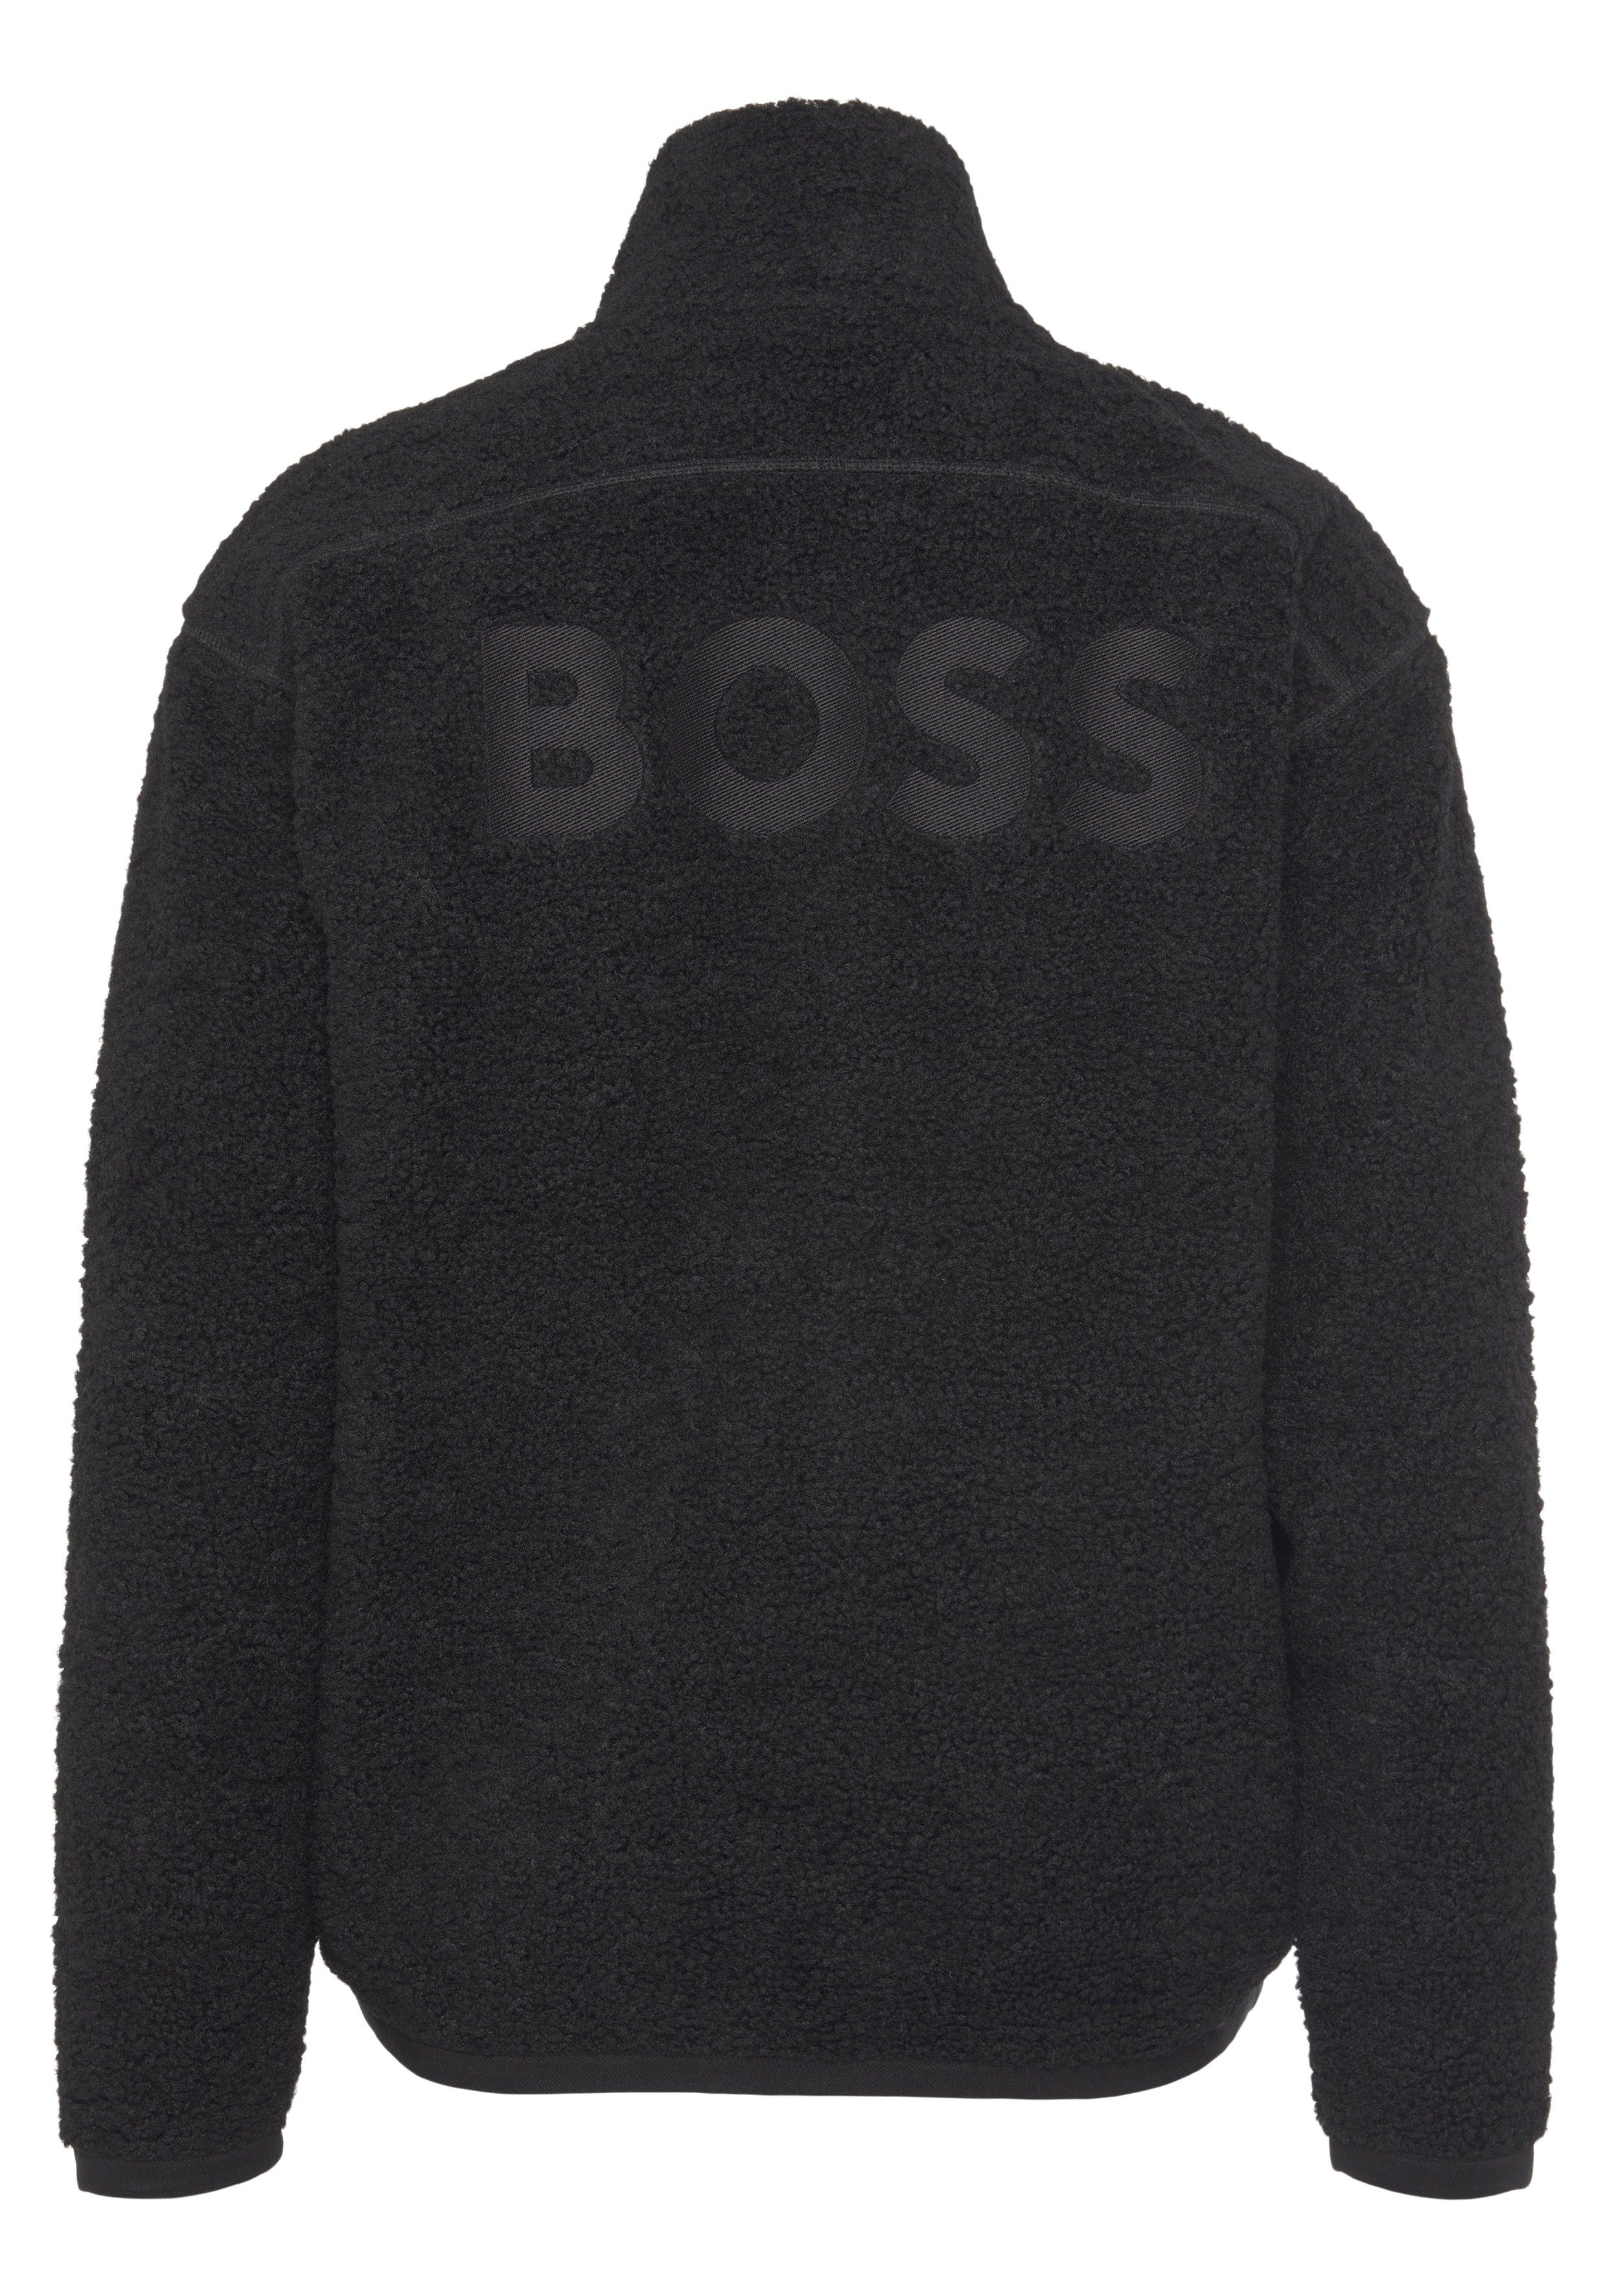 BOSS ORANGE 10239063 Stickerei Sweatshirt Black001 01 mit BOSS großer Rücken Zeteddy auf dem